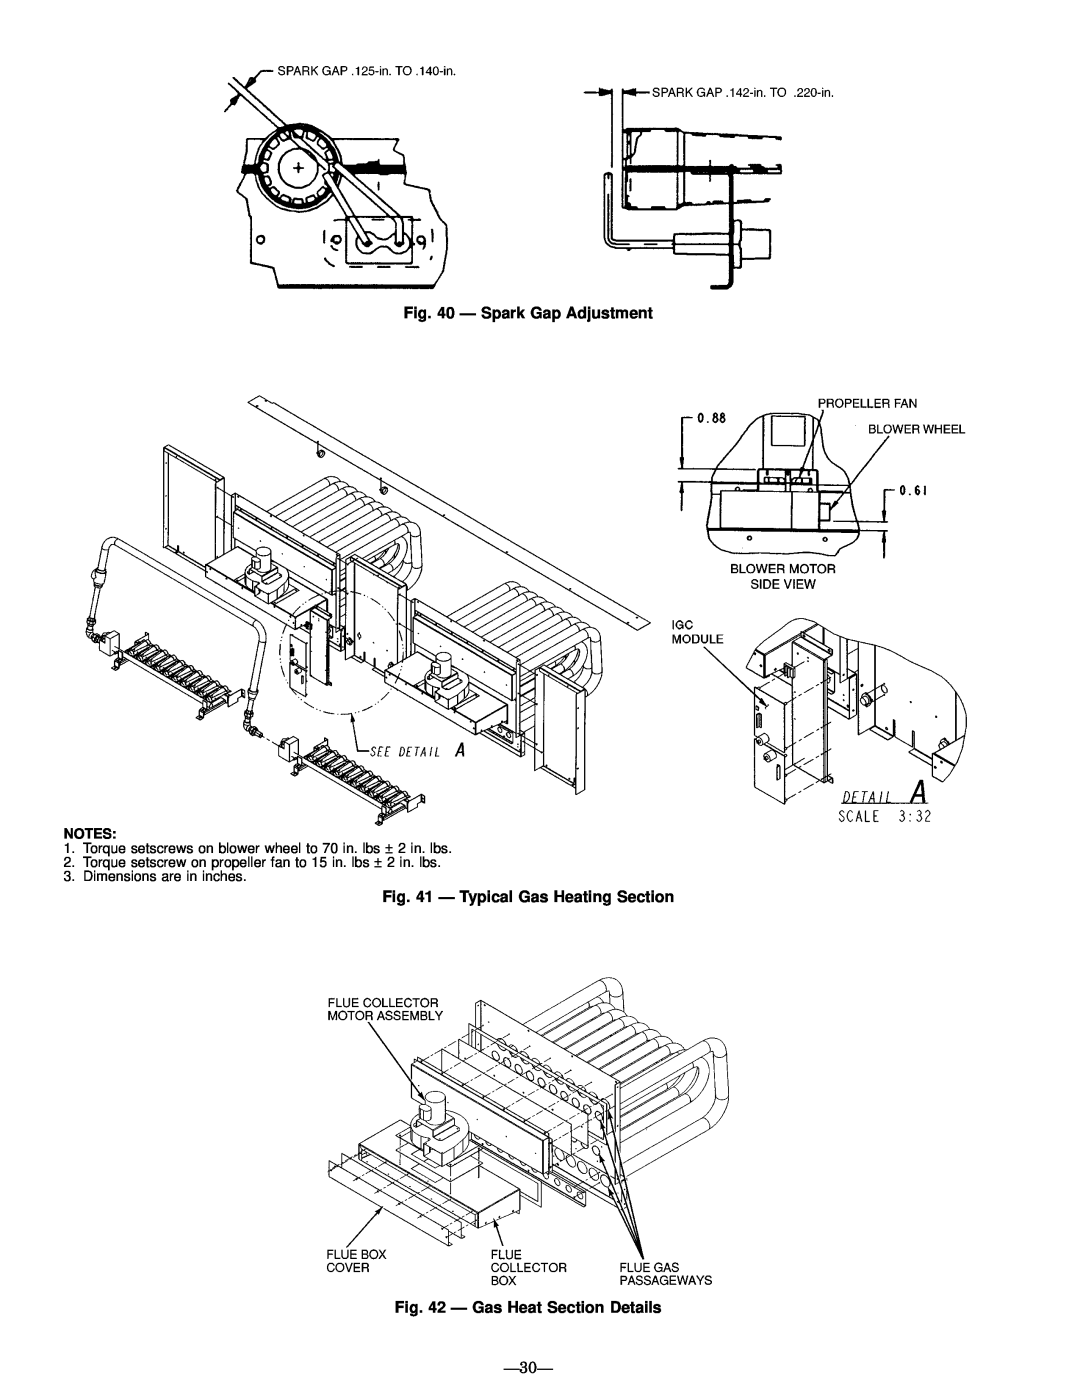 Bryant 580G manual Ð Spark Gap Adjustment, Ð Typical Gas Heating Section, Ð Gas Heat Section Details, Ð30Ð 